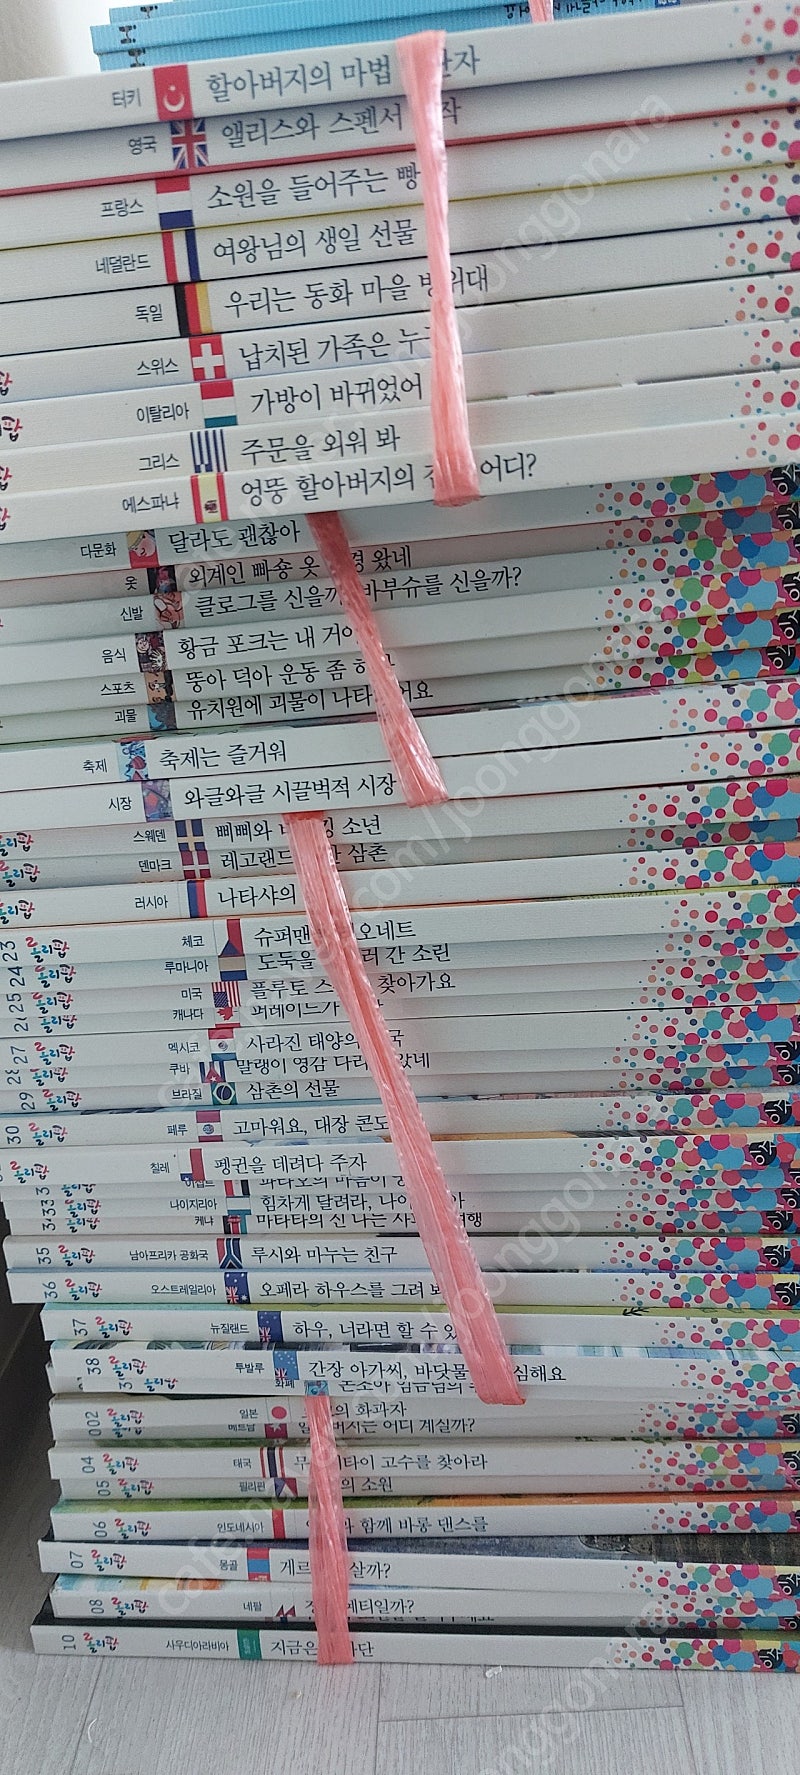 이수 롤리팝 세계문화 책 택포 15,000